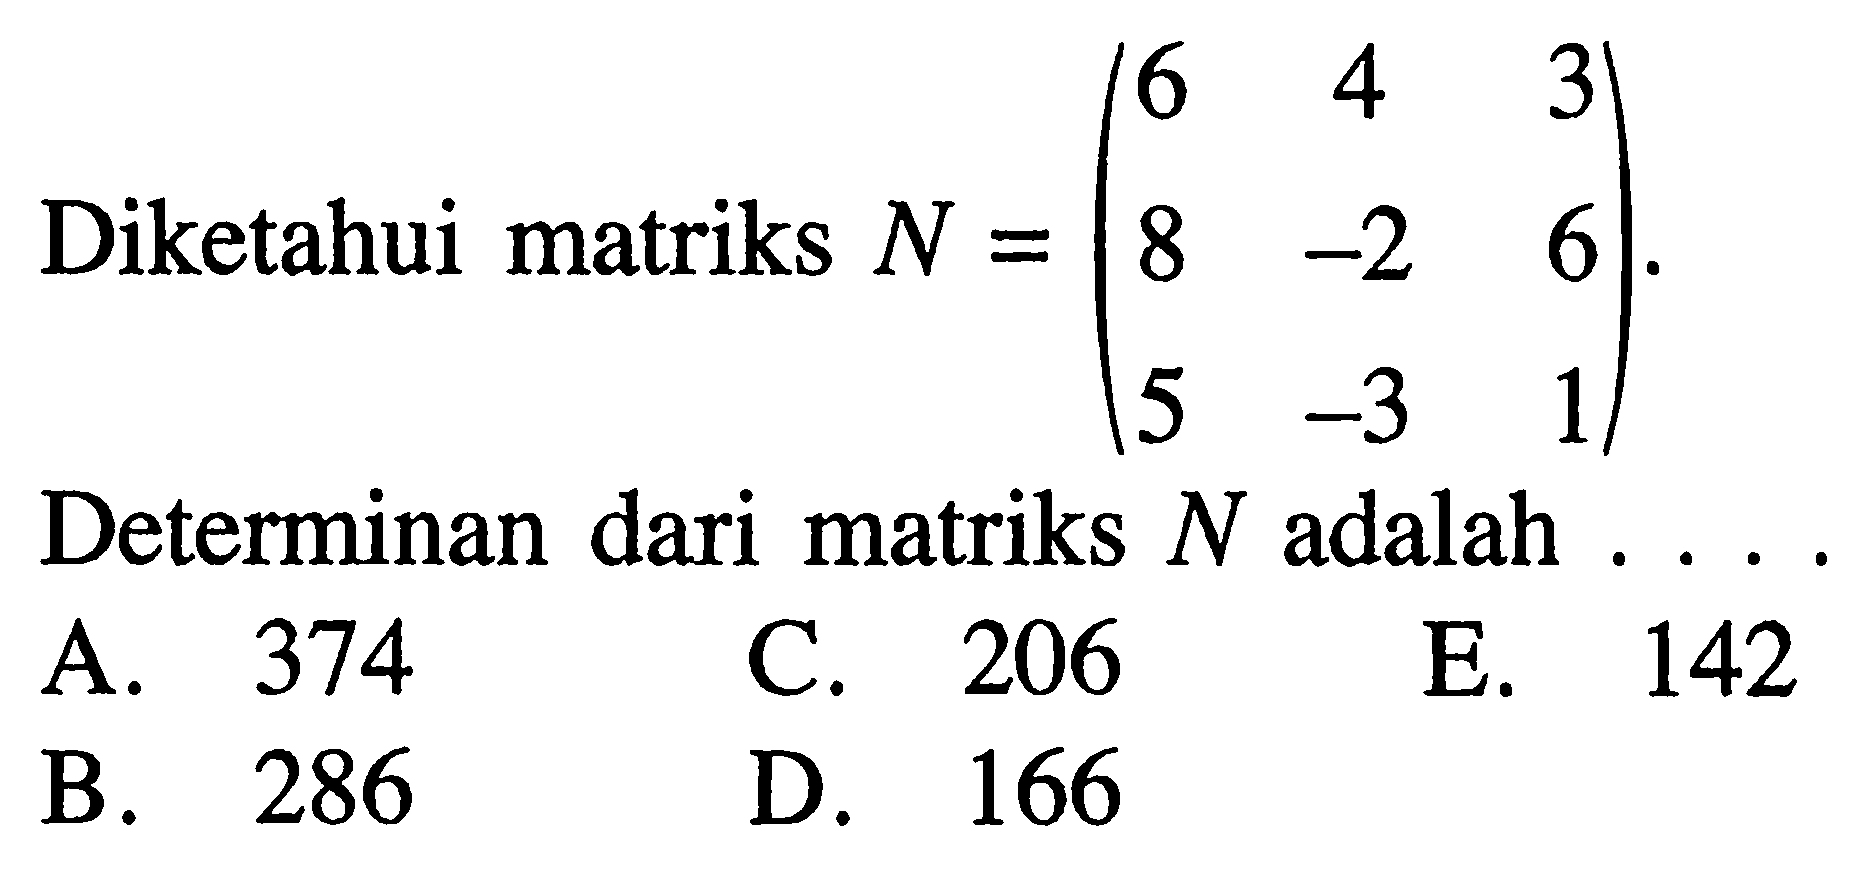 Diketahui matriks N=(6 4 3 8 -2 6 5 -3 1). Determinan dari matriks N adalah ....